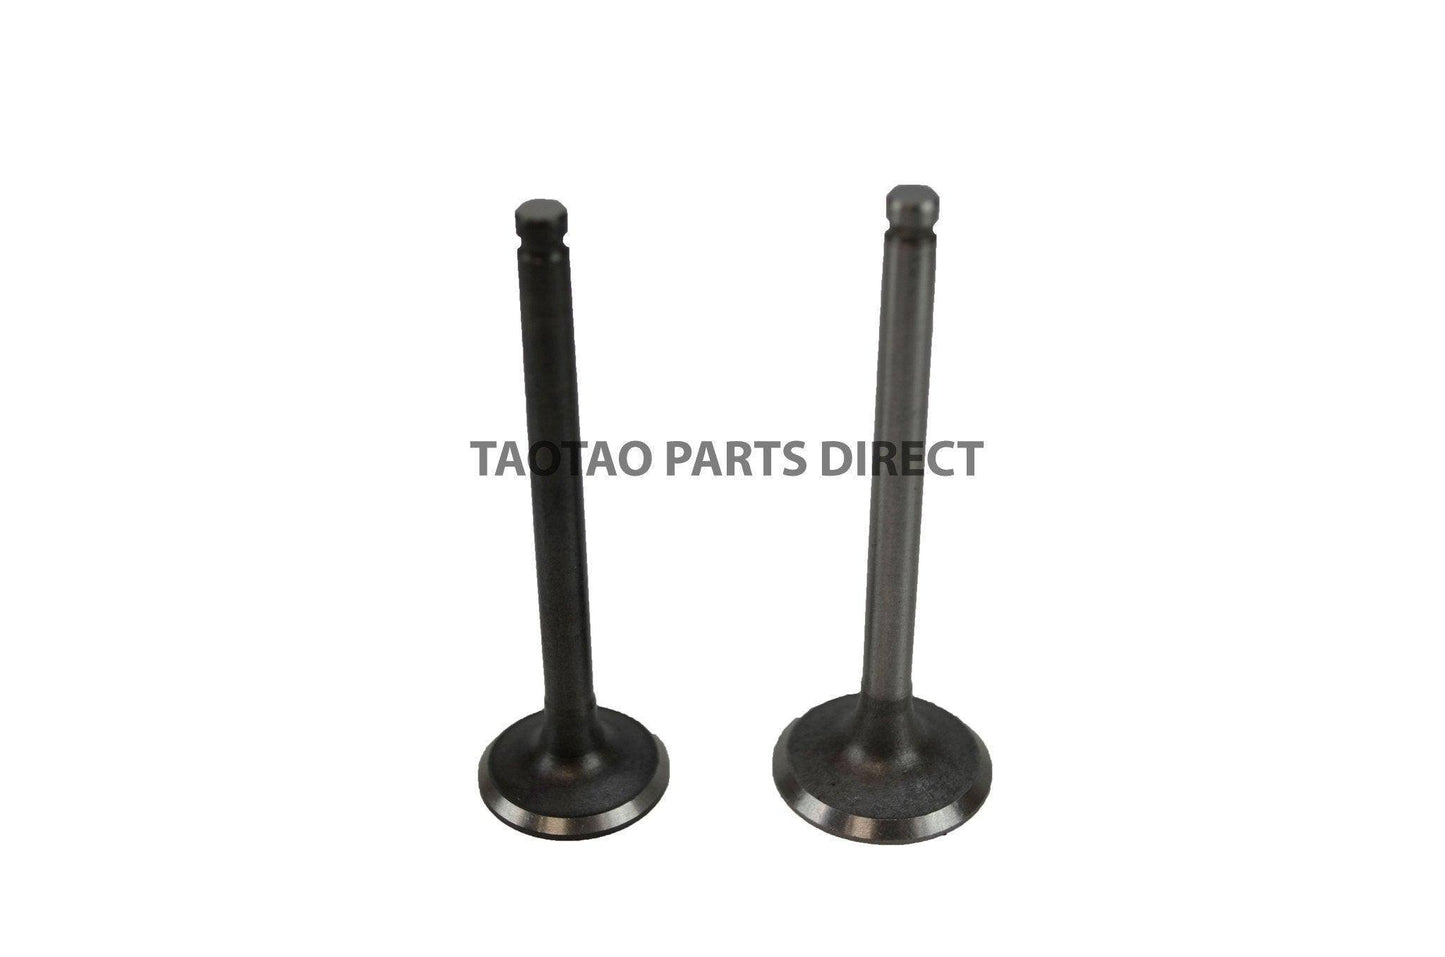 125cc Intake and Exhaust Valve Set - TaoTao Parts Direct